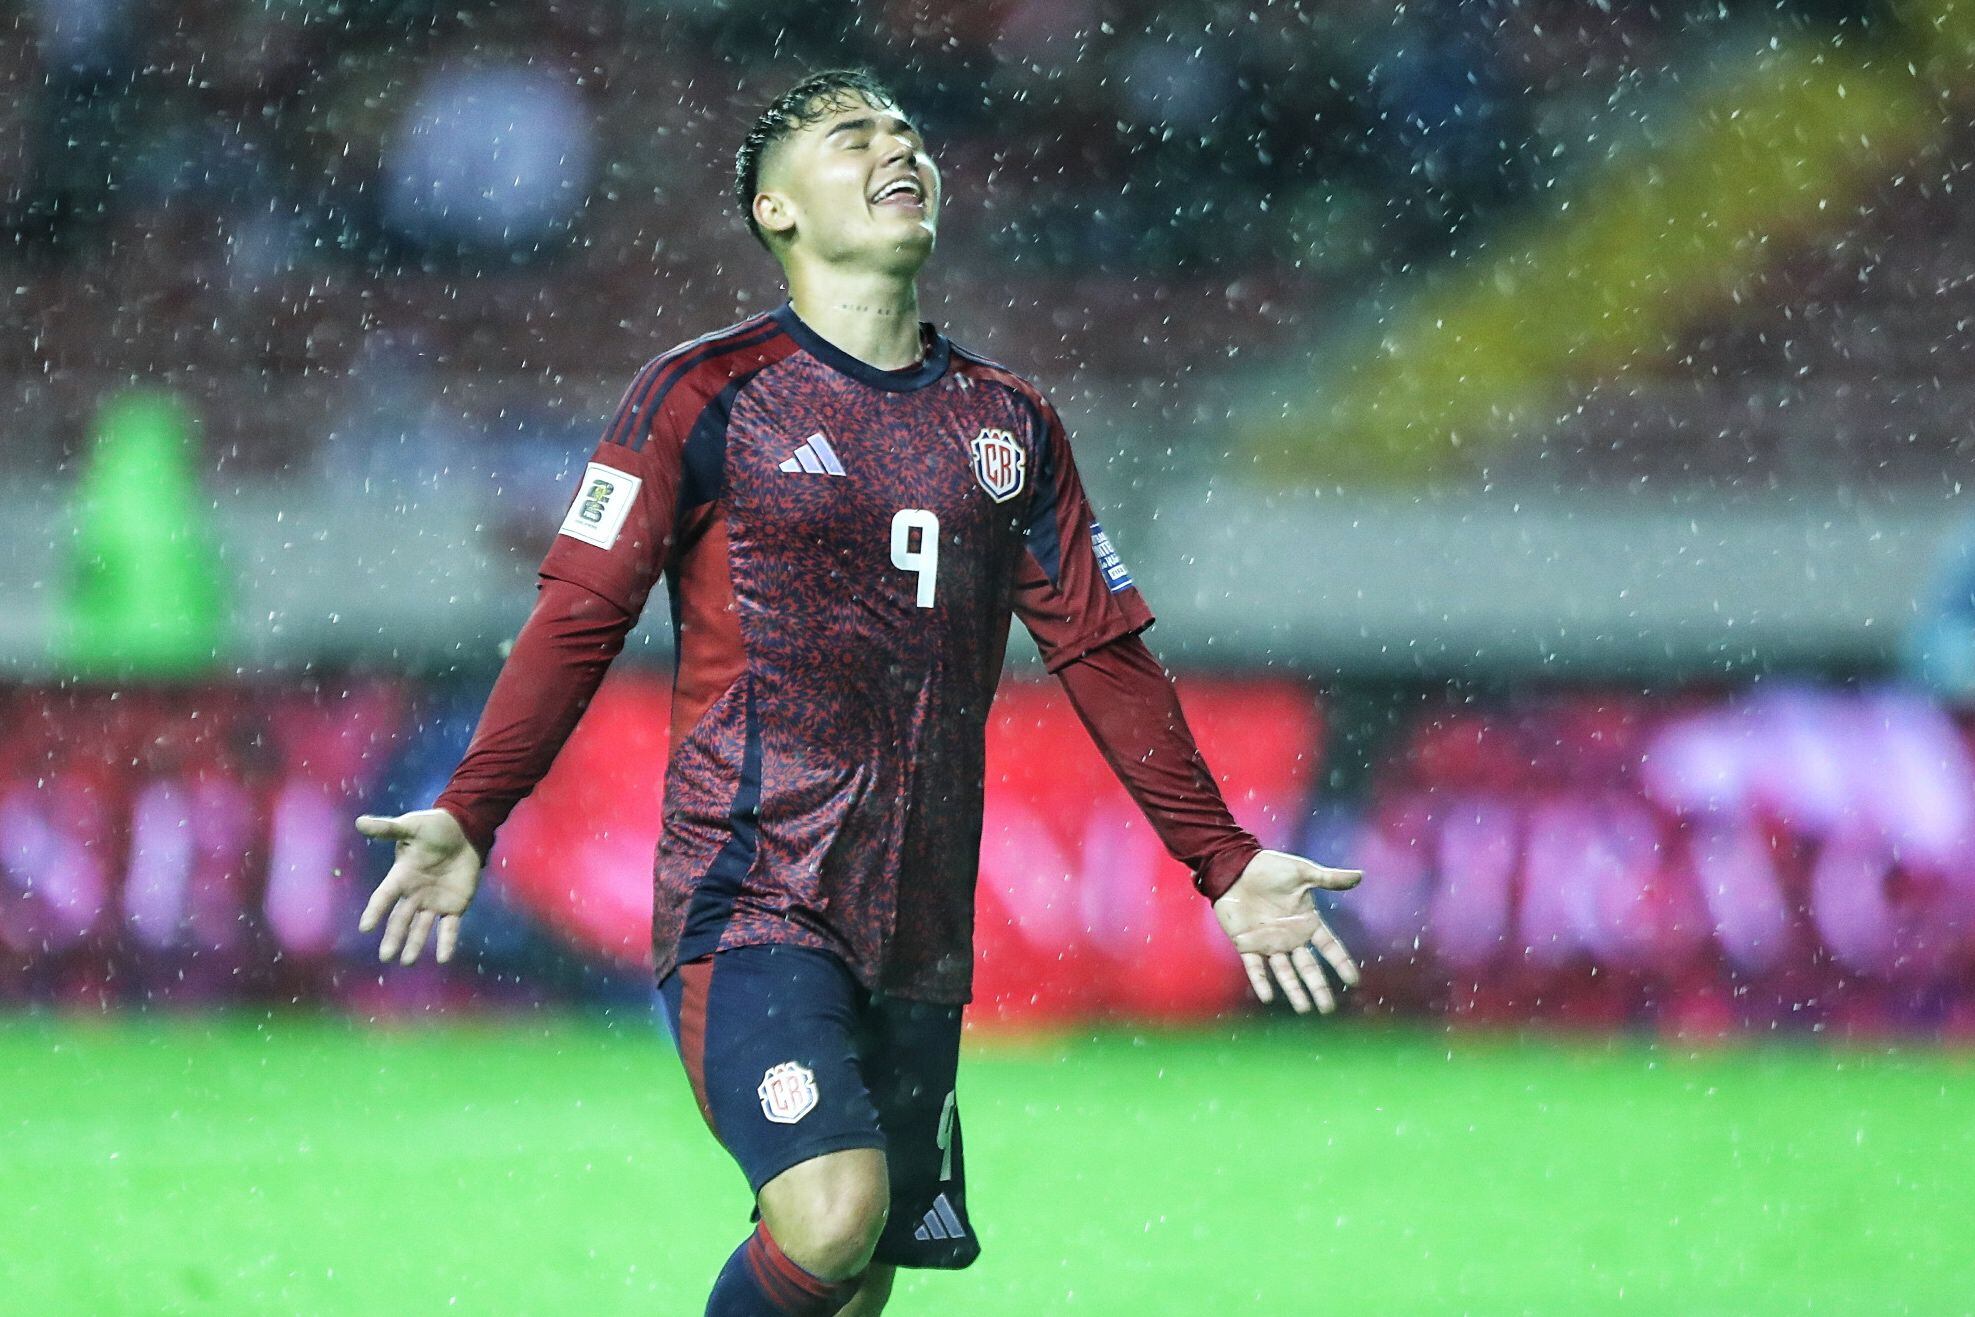 Manfred Ugalde se esforzó en la ofensiva de la Selección de Costa Rica. Aquí lamentó una opción que no pudo concretar.